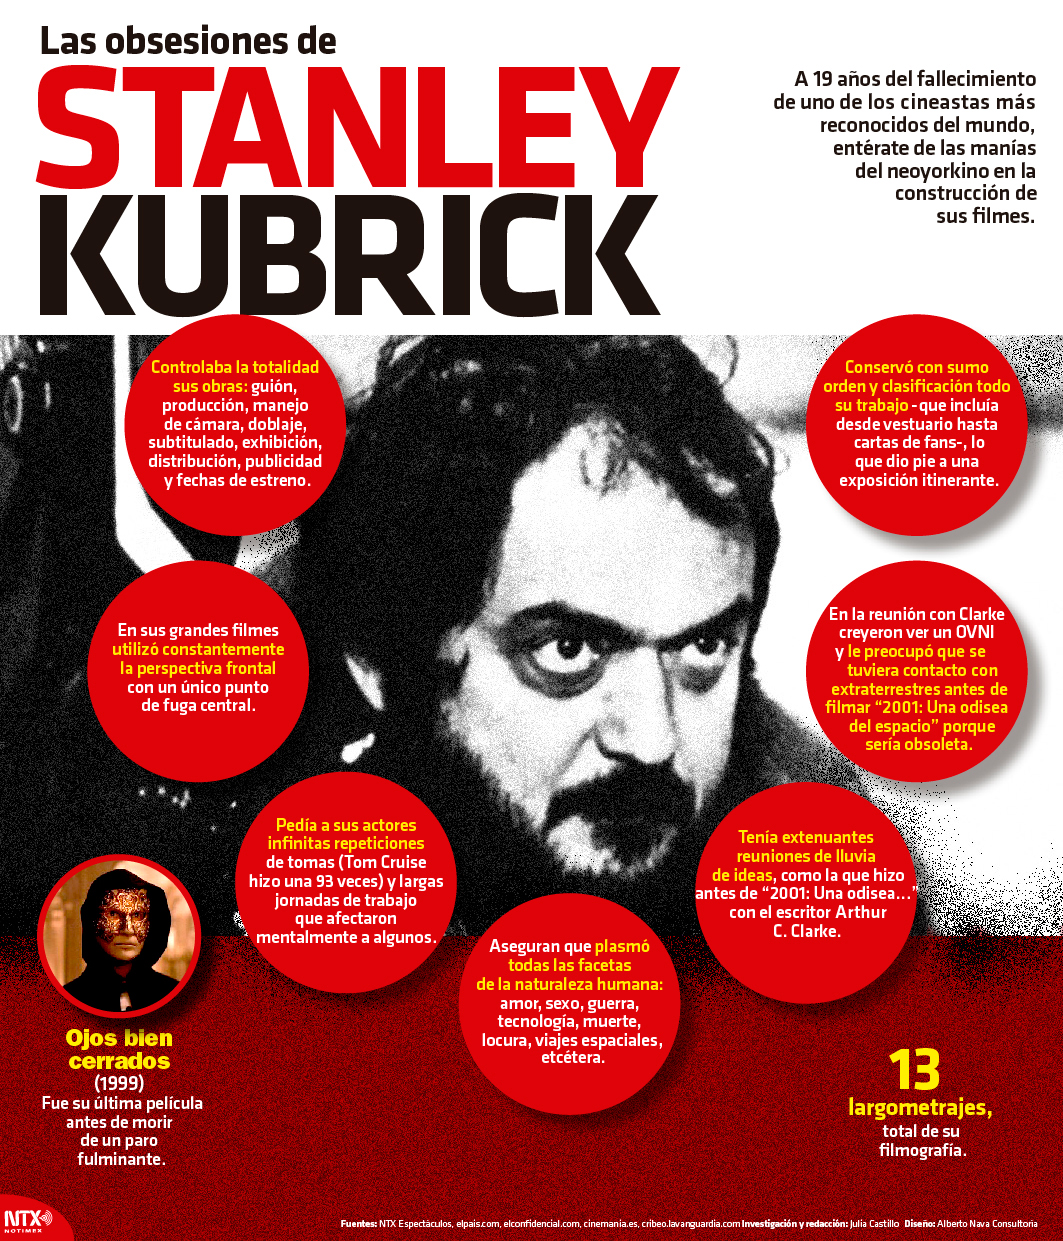 Las obsesiones de Stanley Kubrick